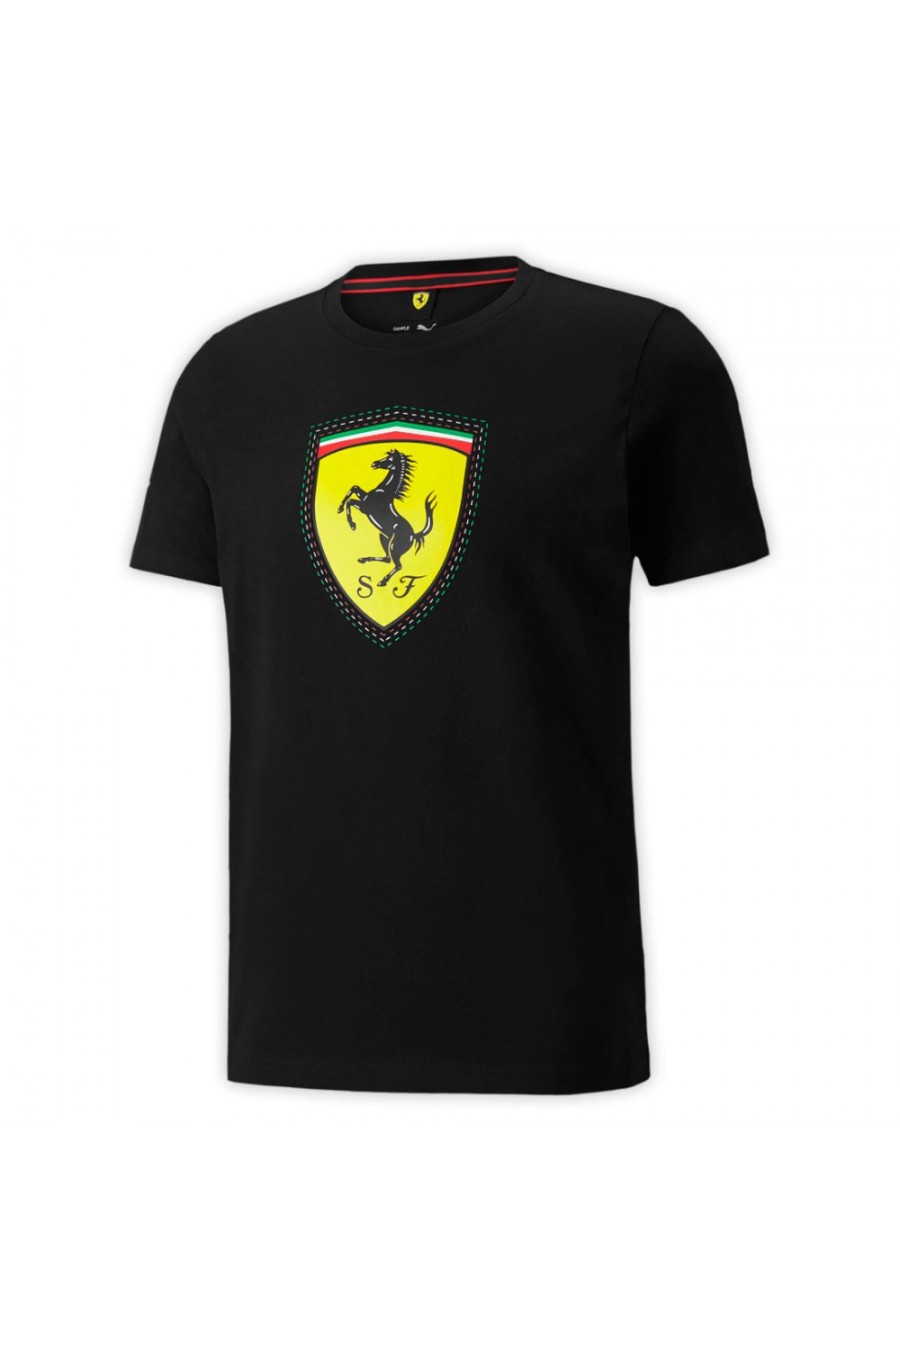 Scuderia Ferrari Race Logo Black T-shirt